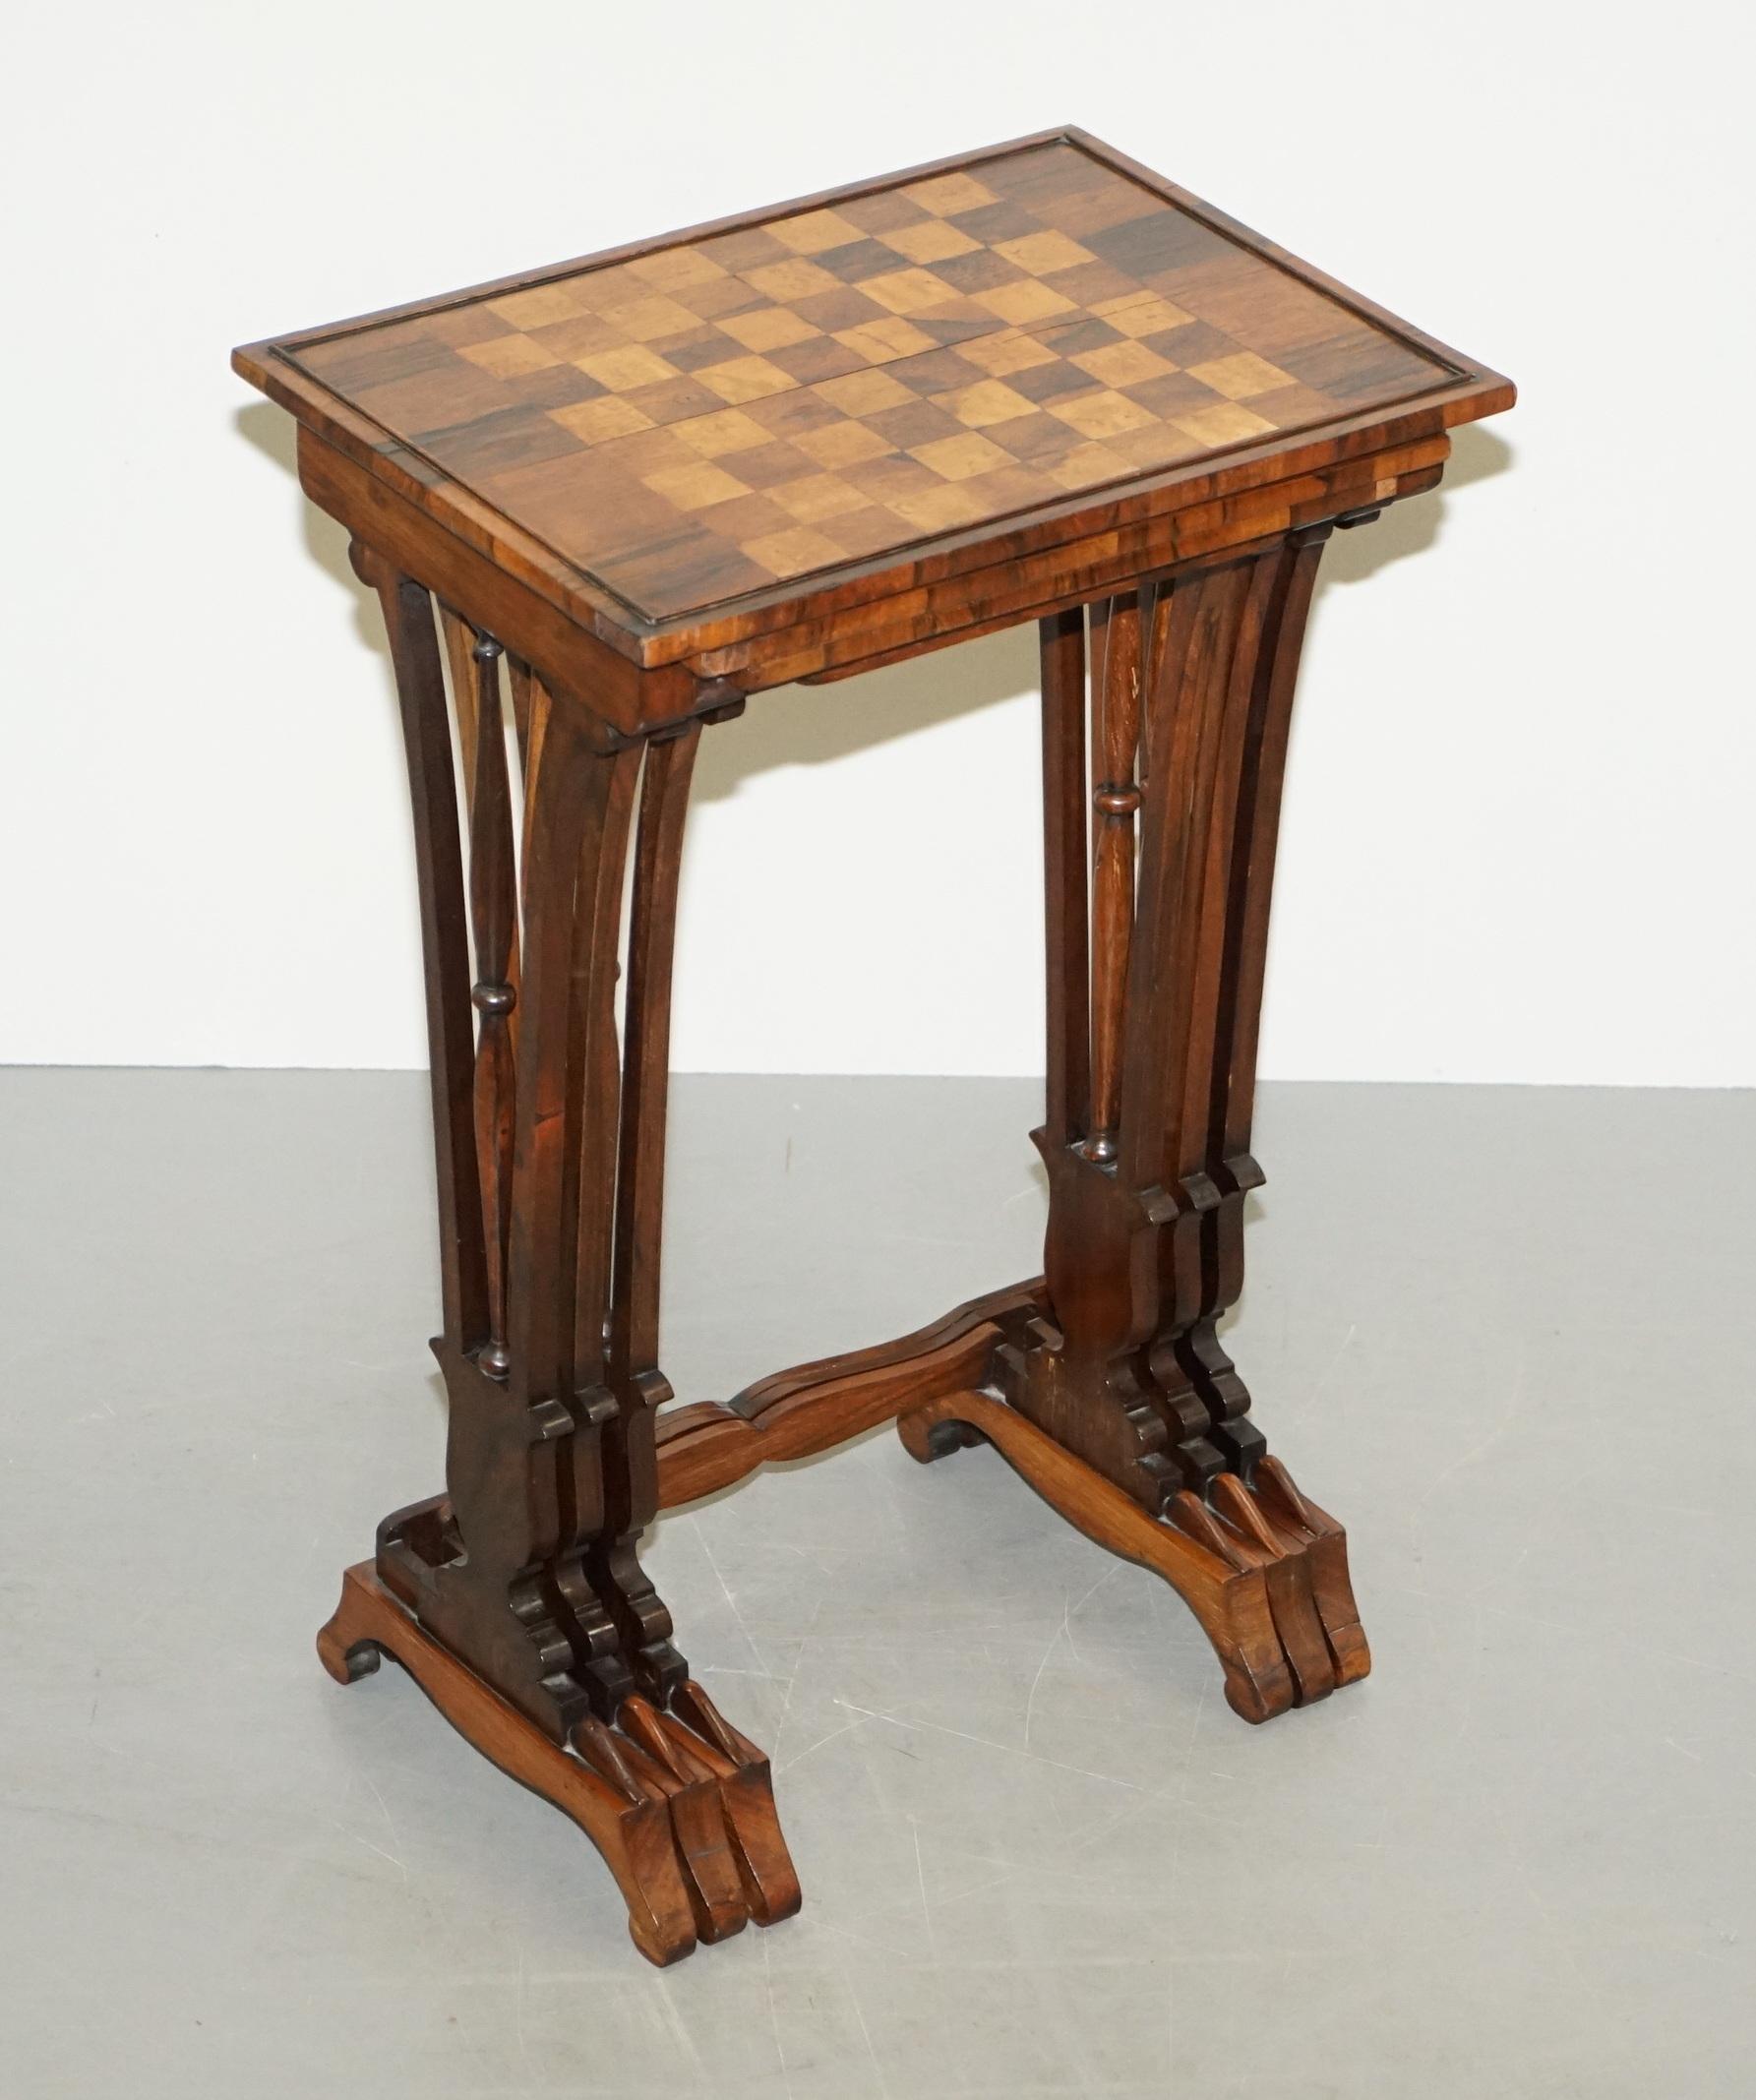 Nous avons le plaisir d'offrir à la vente ce très beau Nid de tables Regency circa 1810-1820 en bois dur attribué à Gillows de Lancaster 

Un nid très fin, certainement fabriqué par Gillows, ils sont faits de bois dur très fin et ont la table